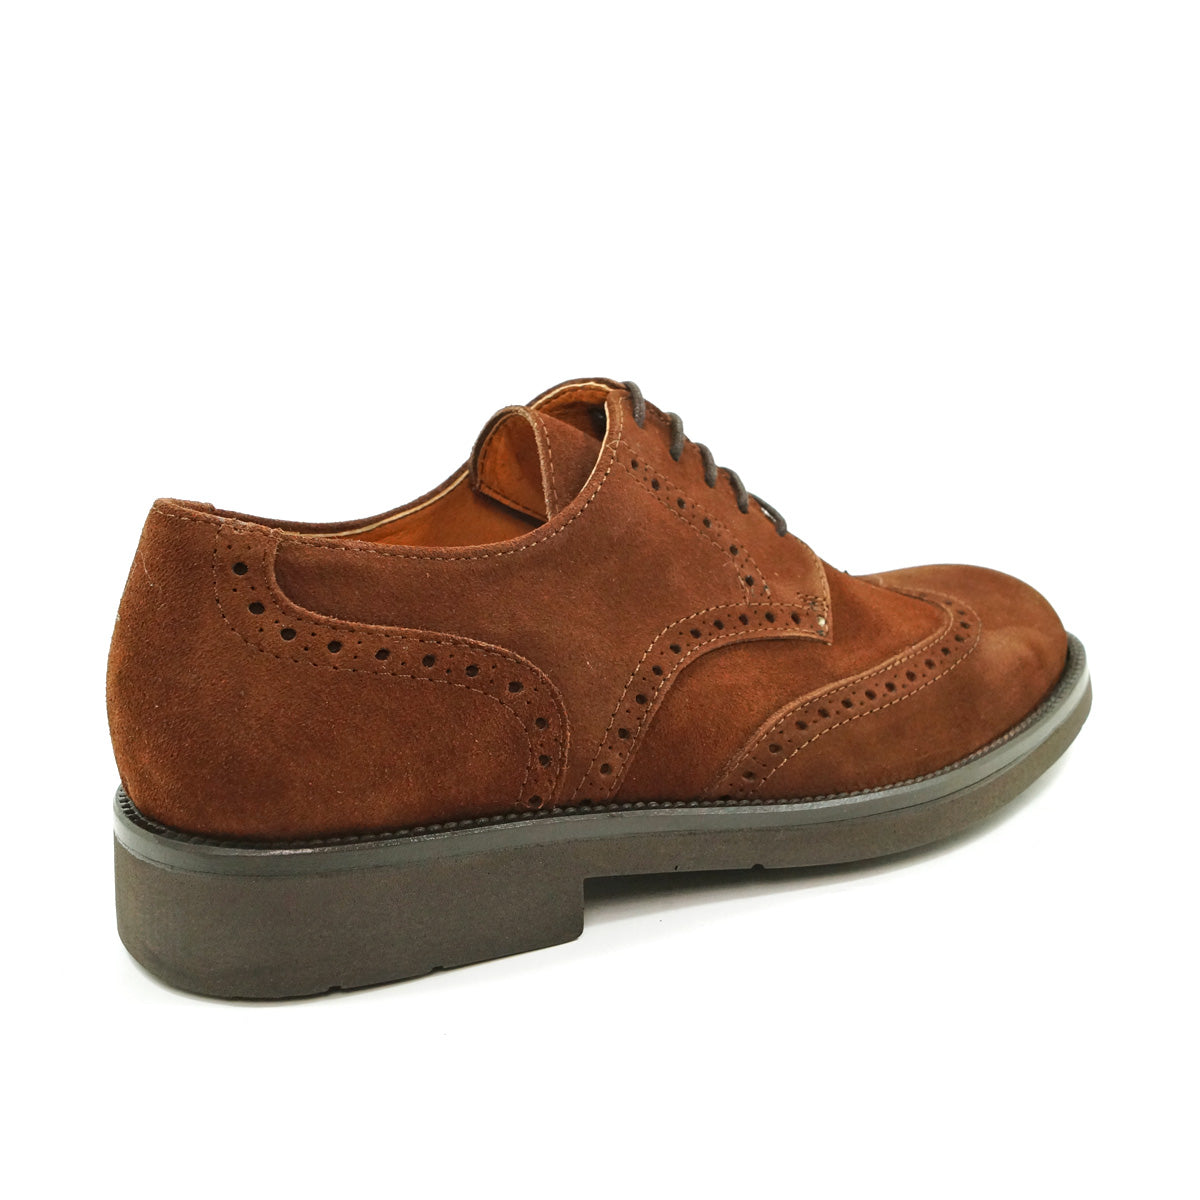 Pielsa Yale - Zapatos brogue en ante marrón